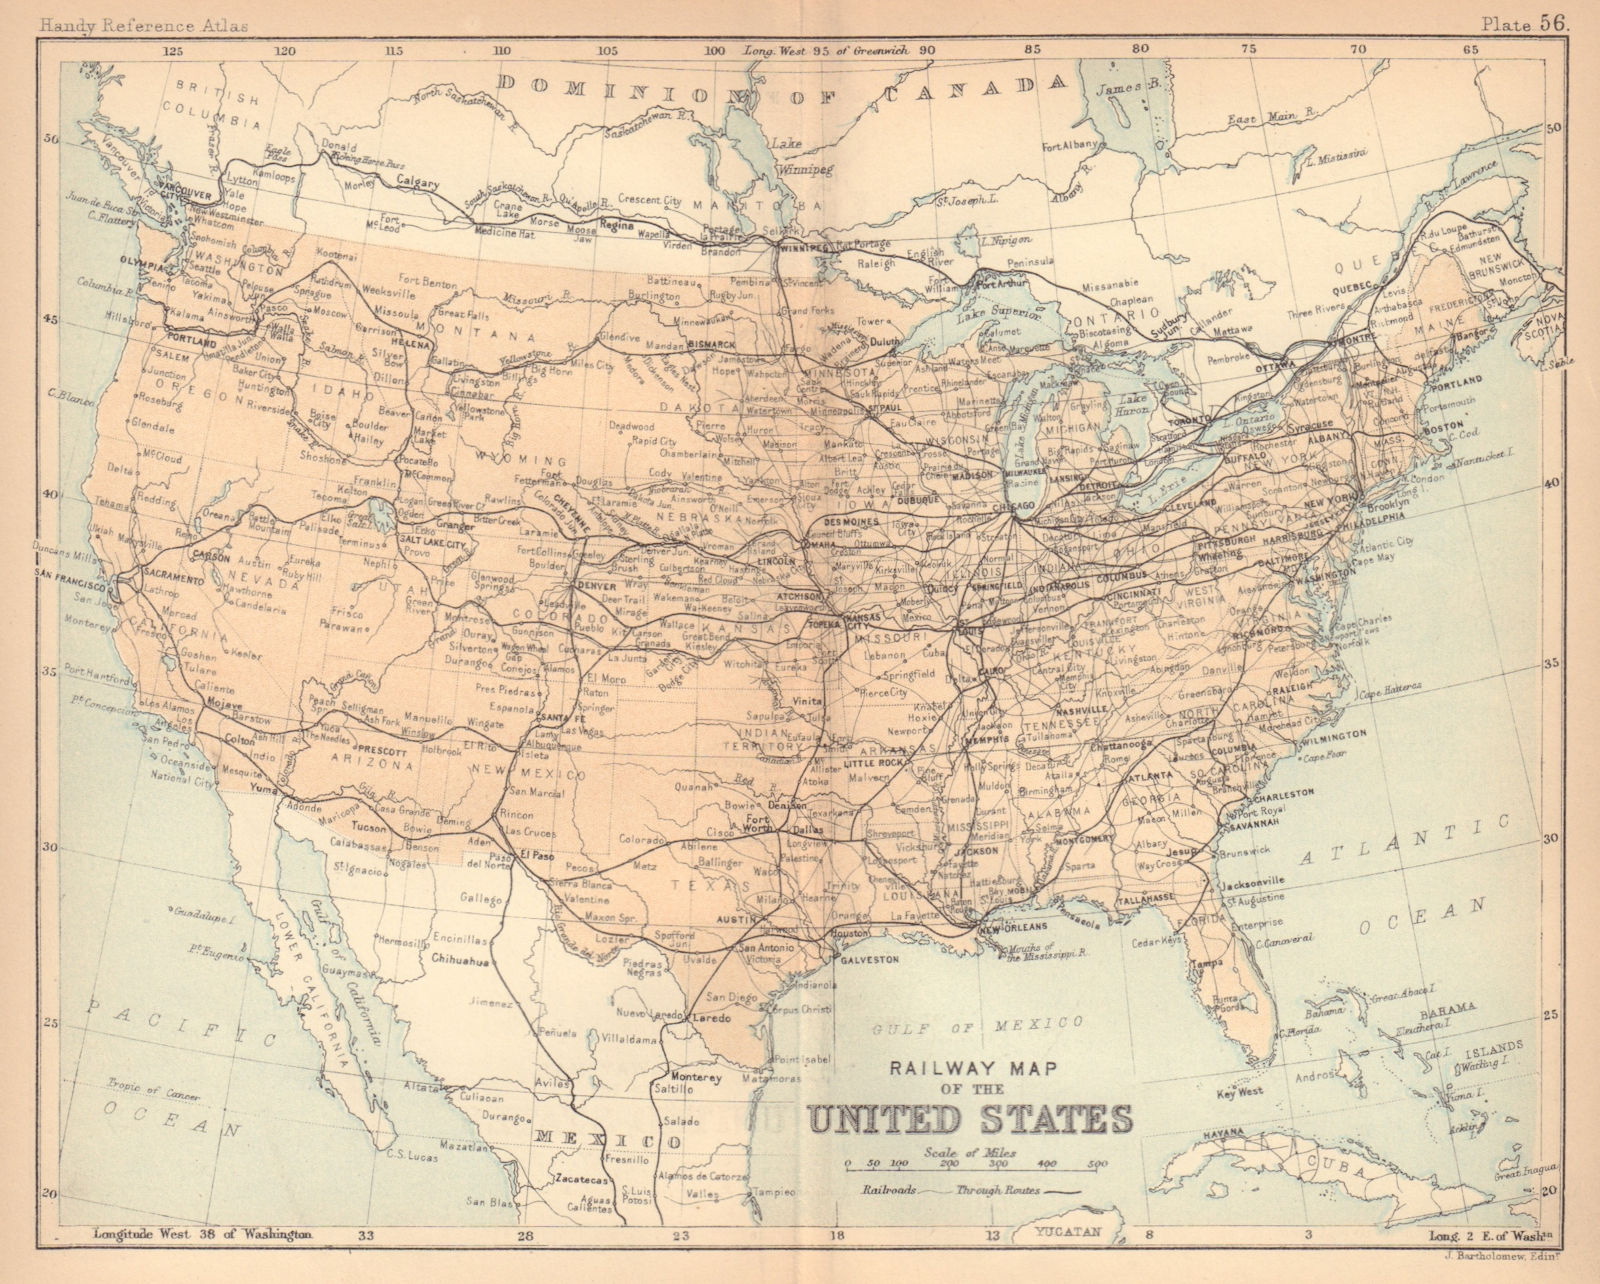 Railway Map of the United States. USA. BARTHOLOMEW 1888 old antique chart